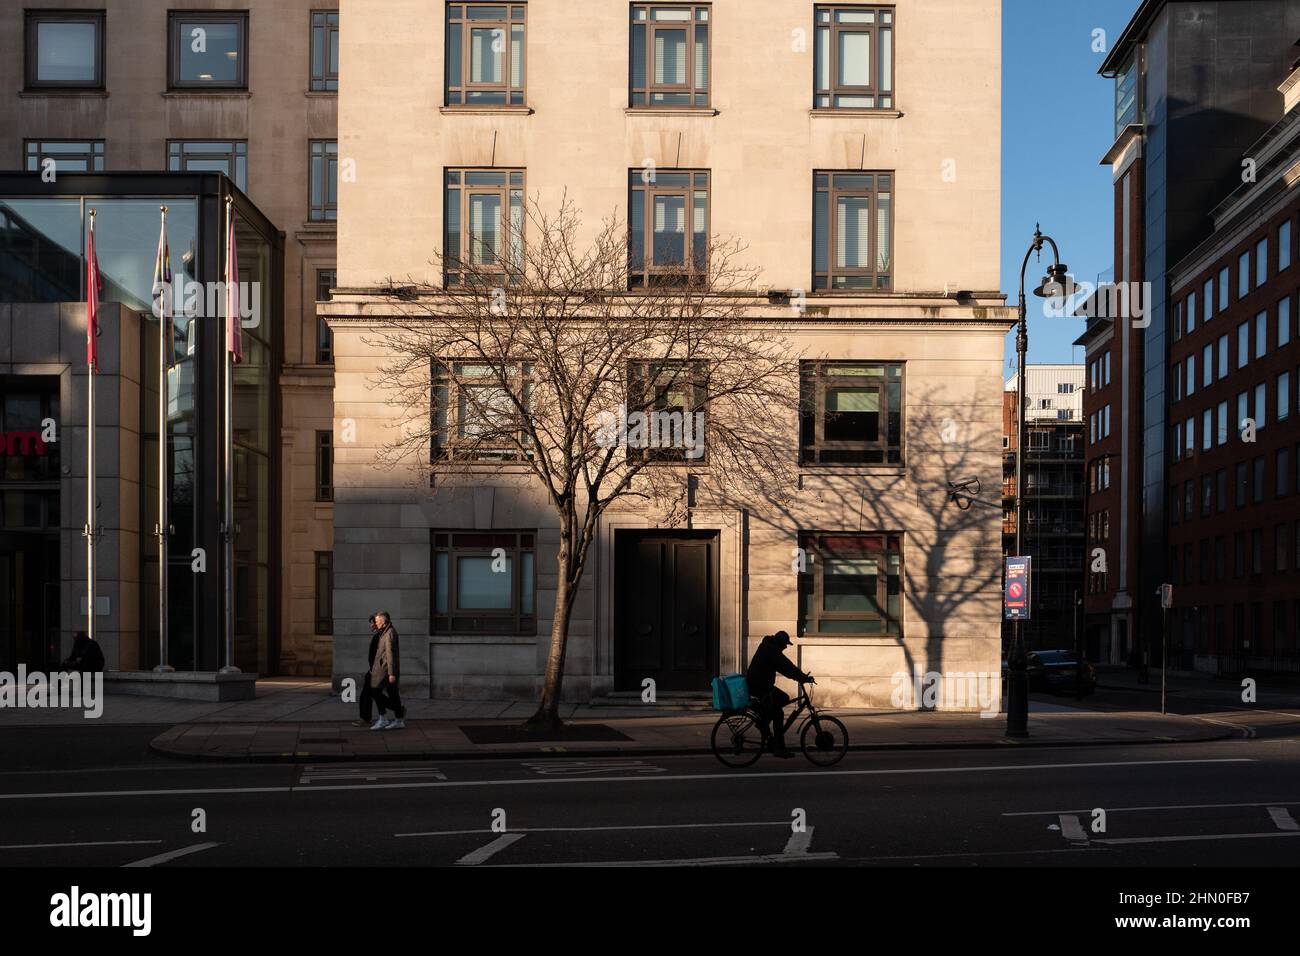 Faible soleil d'hiver et ombres sur un bâtiment dans le centre de Londres lors d'un hiver lumineux mais froid. Banque D'Images